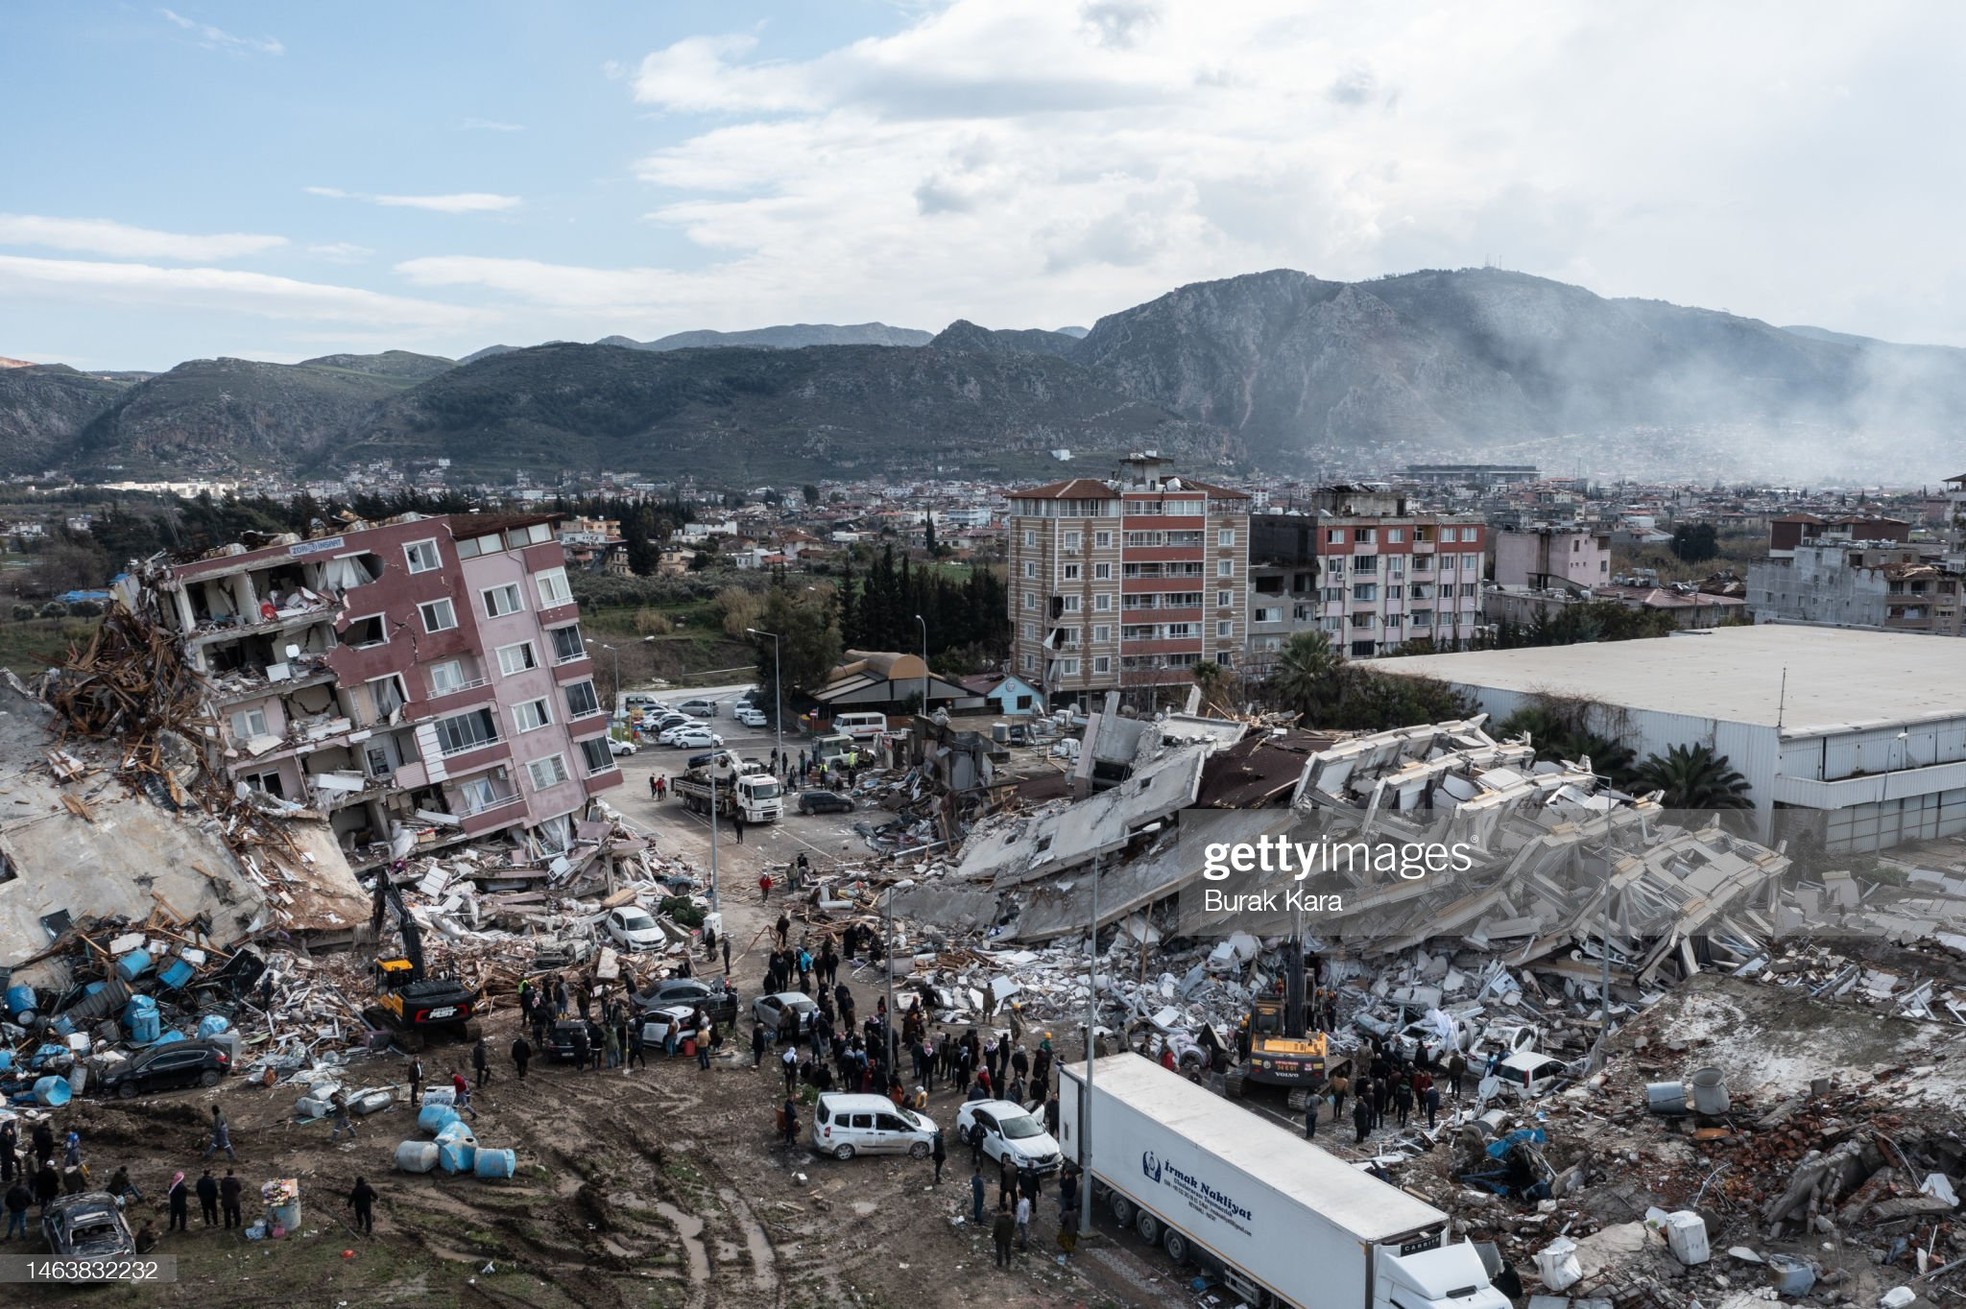 Rơi nước mắt cảnh người dân Thổ Nhĩ Kỳ thẫn thờ bên những tòa nhà vỡ vụn-12